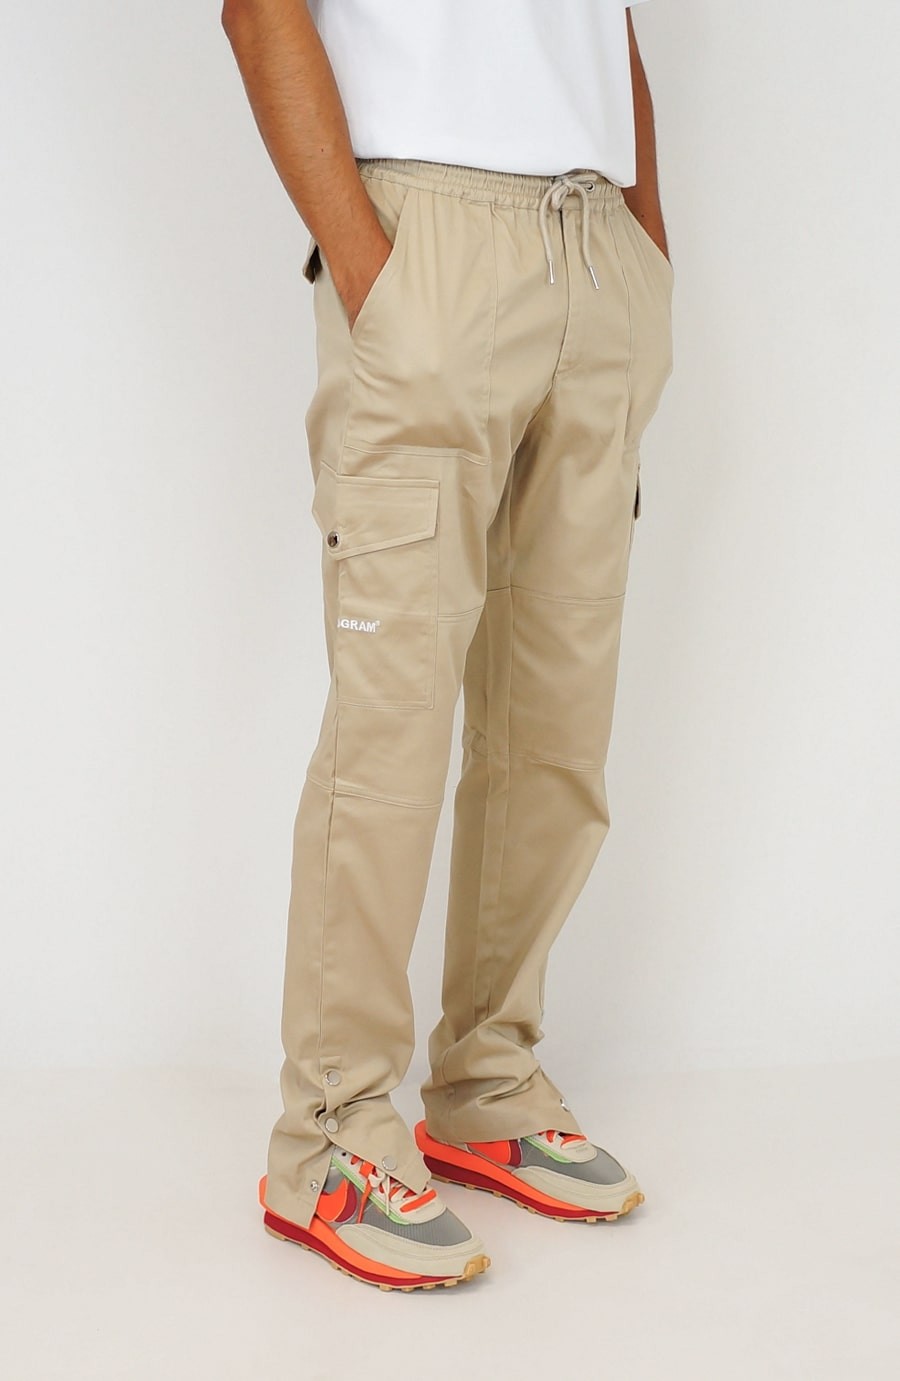 Pantalon cargo homme avec un bouton + zip